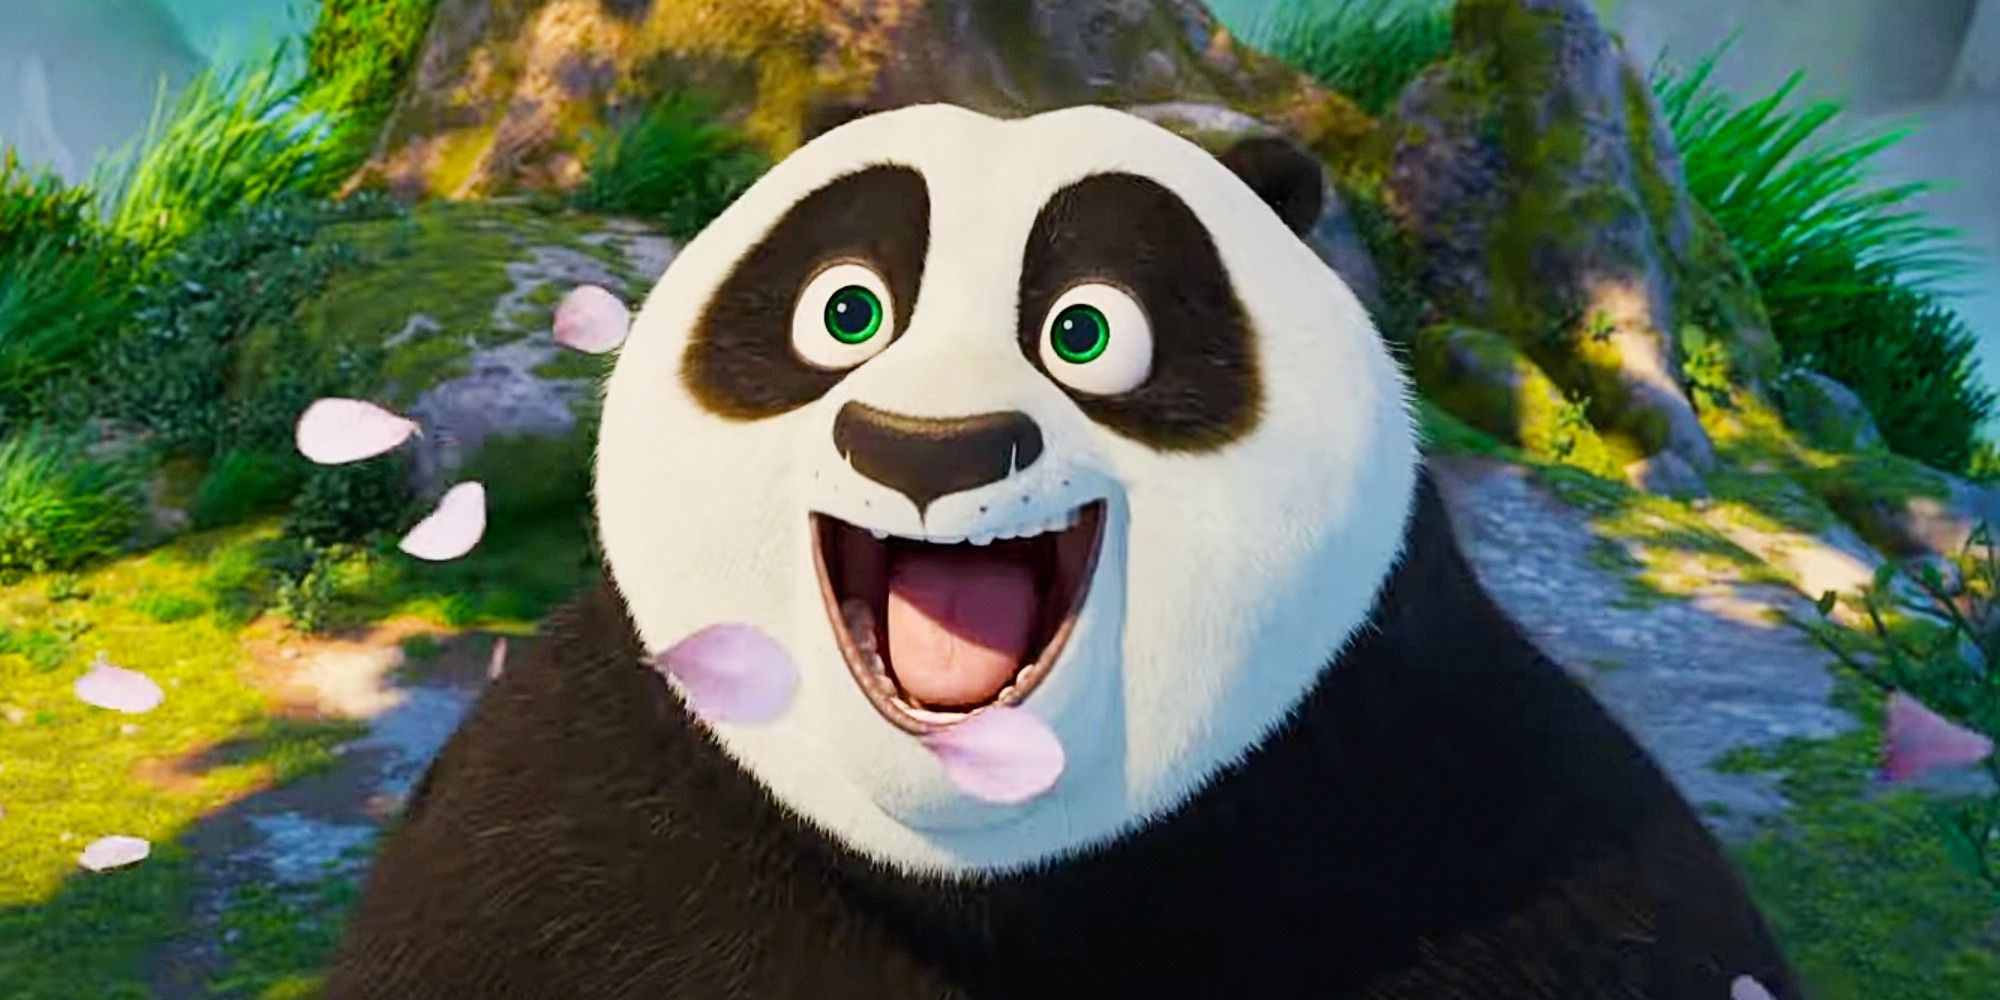 Po sonríe ampliamente con la boca abierta mientras los pétalos de las flores se mueven con el viento a su alrededor en Kung Fu Panda 4.